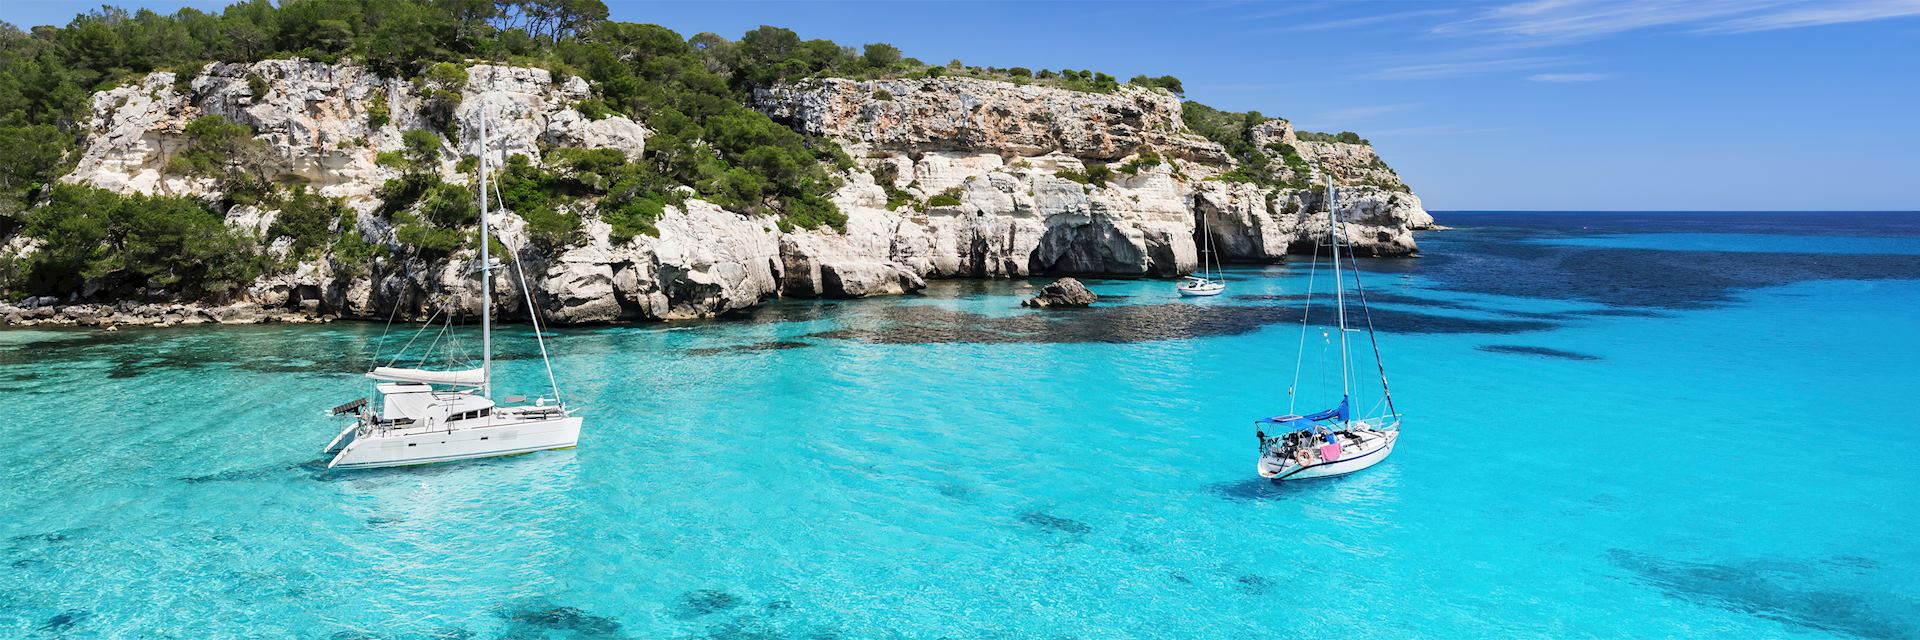 Mediterranean sea, Croatia